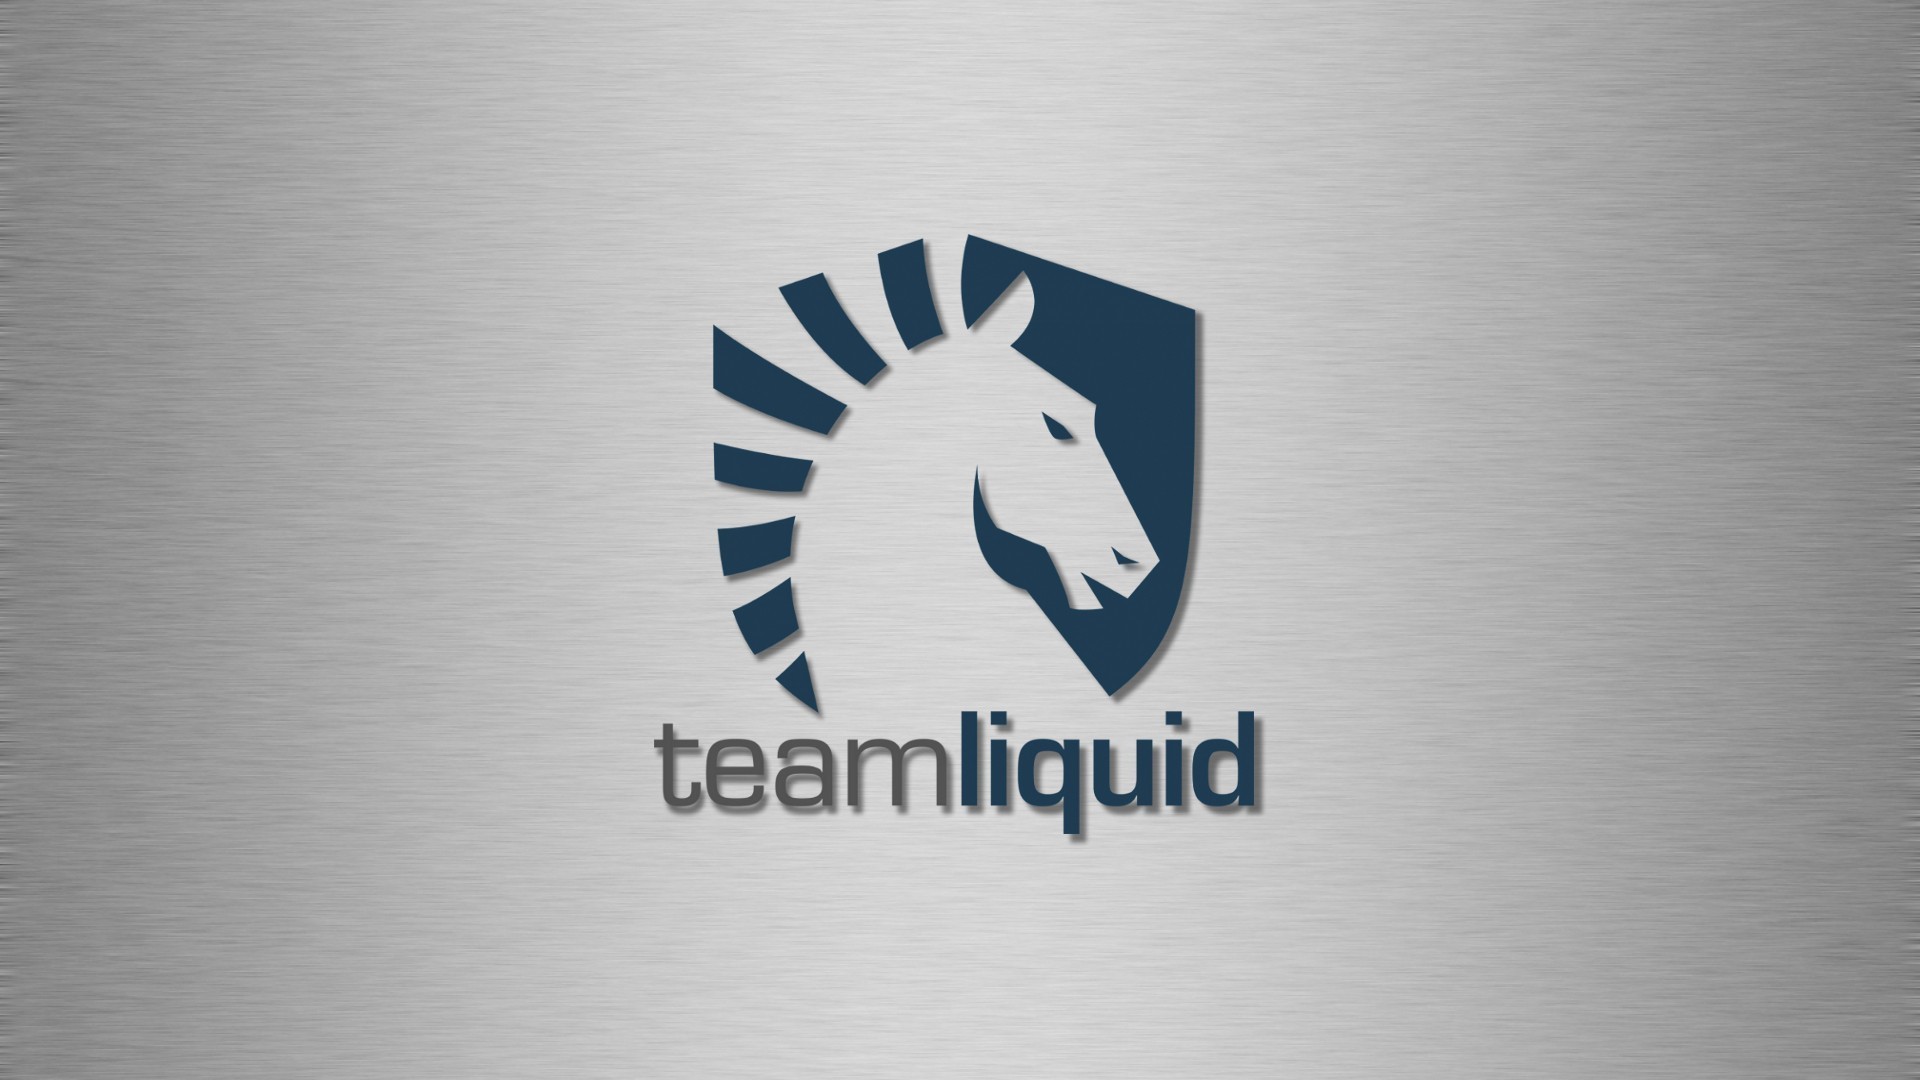 Team liquid steam фото 94